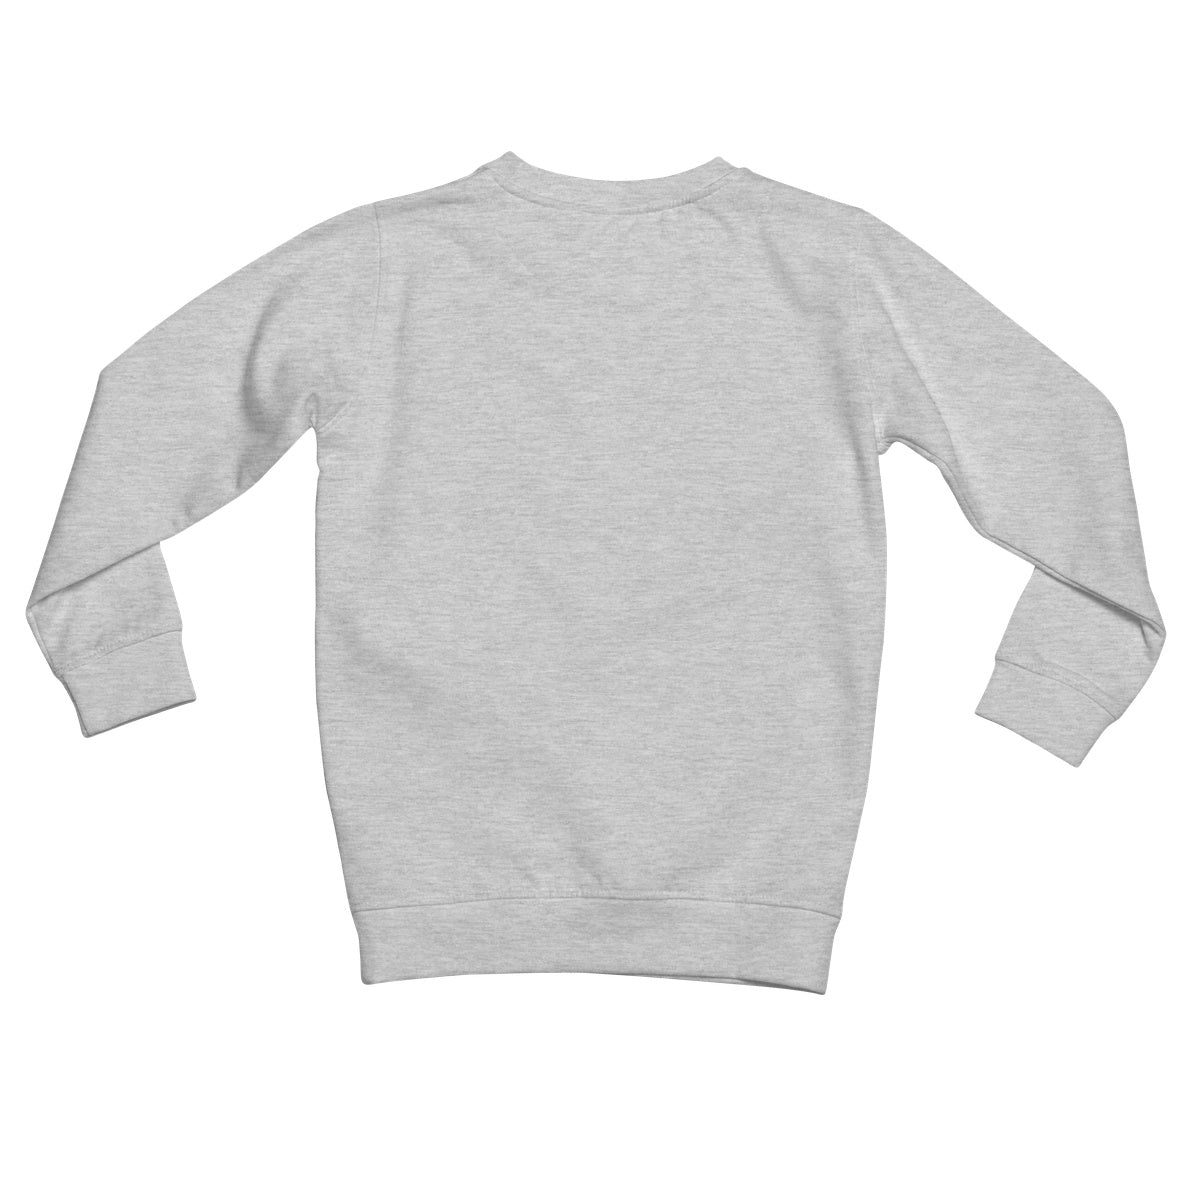 Daihard Kids Retail Sweatshirt